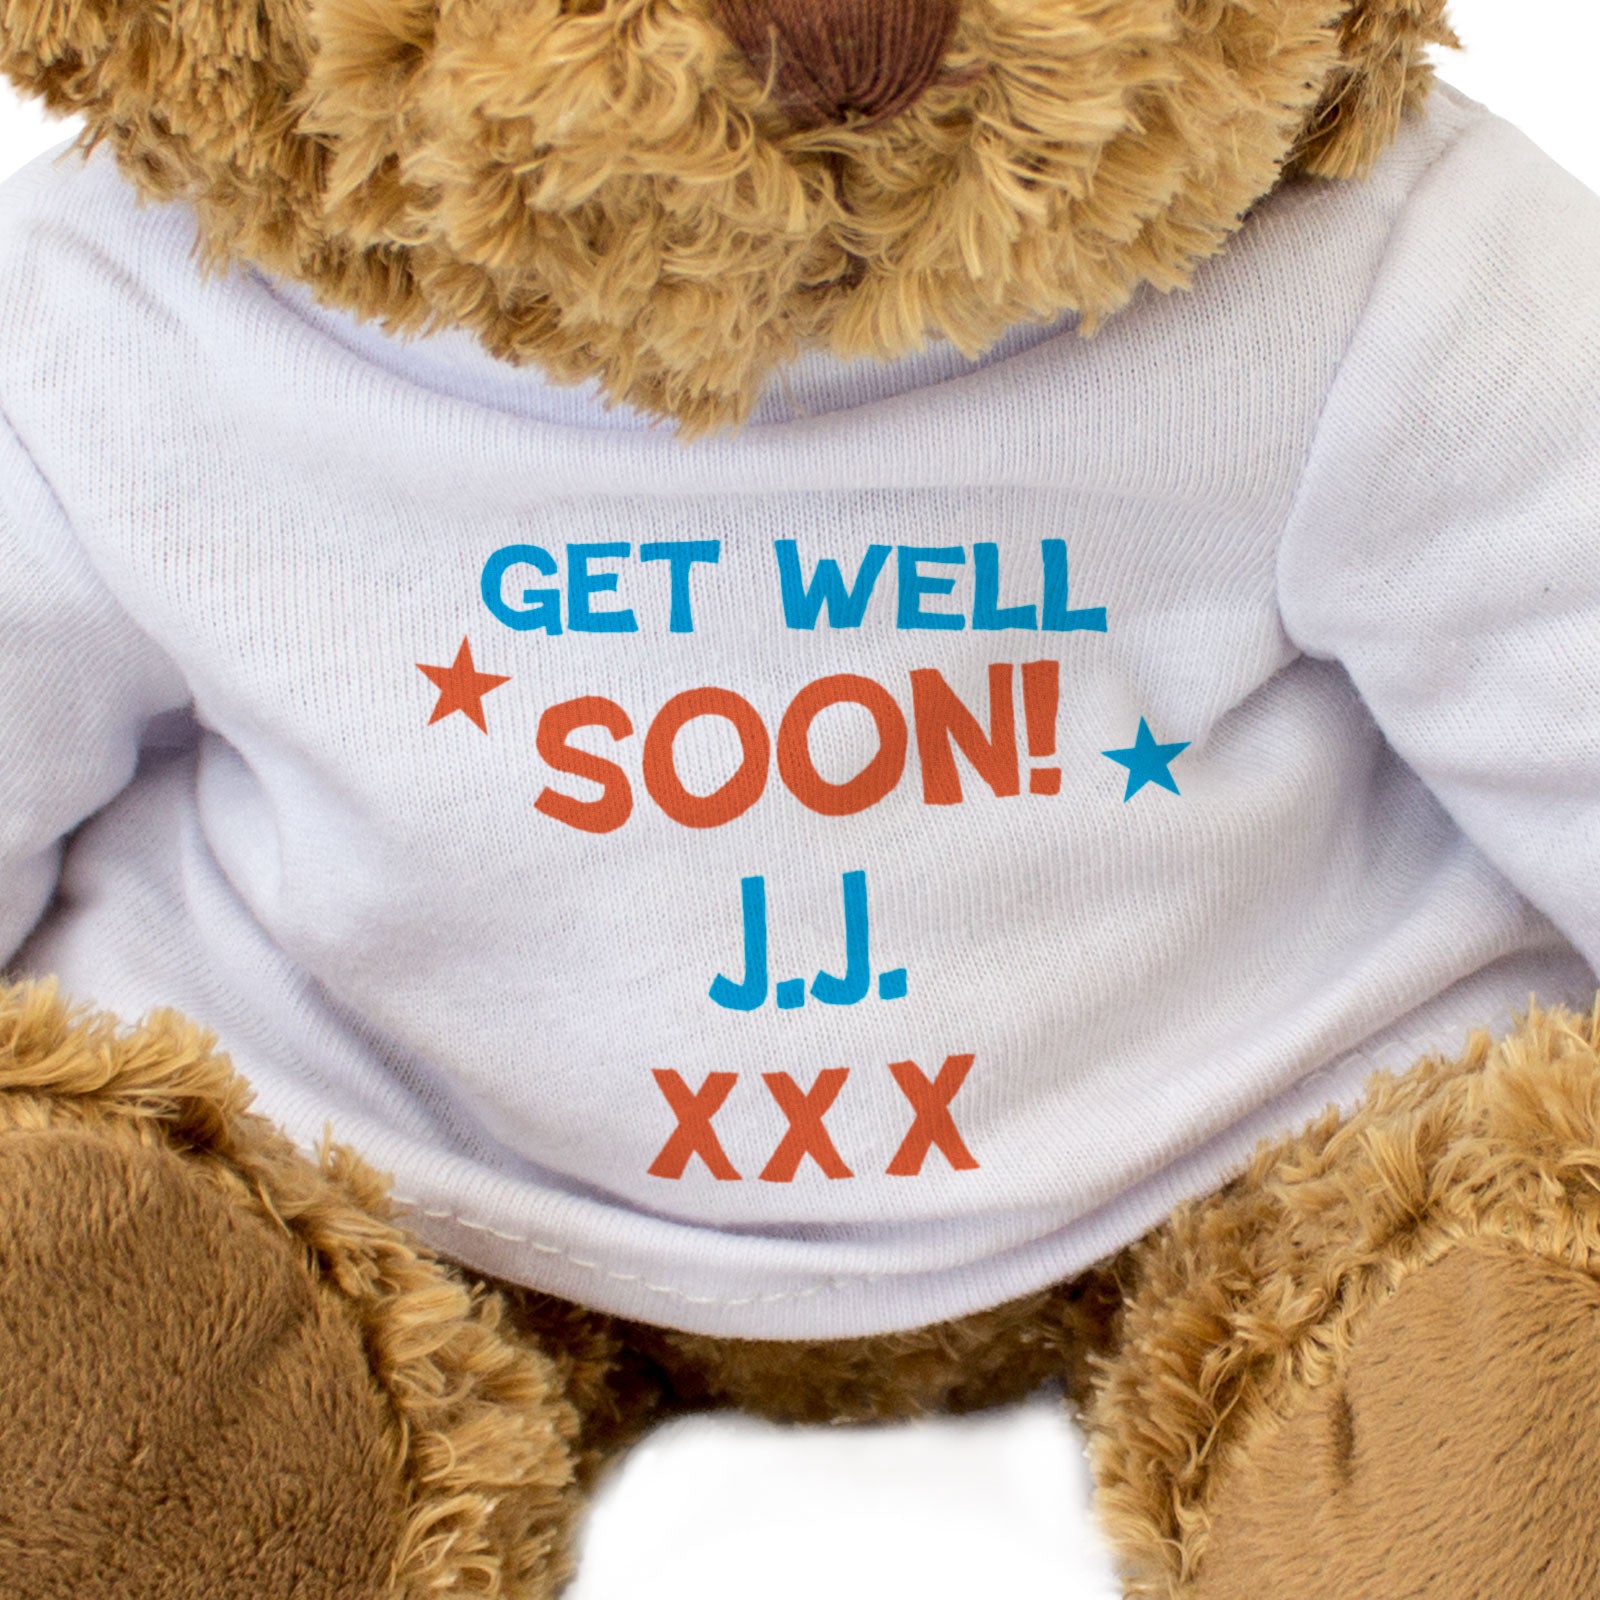 Get Well Soon J.J. - Teddy Bear